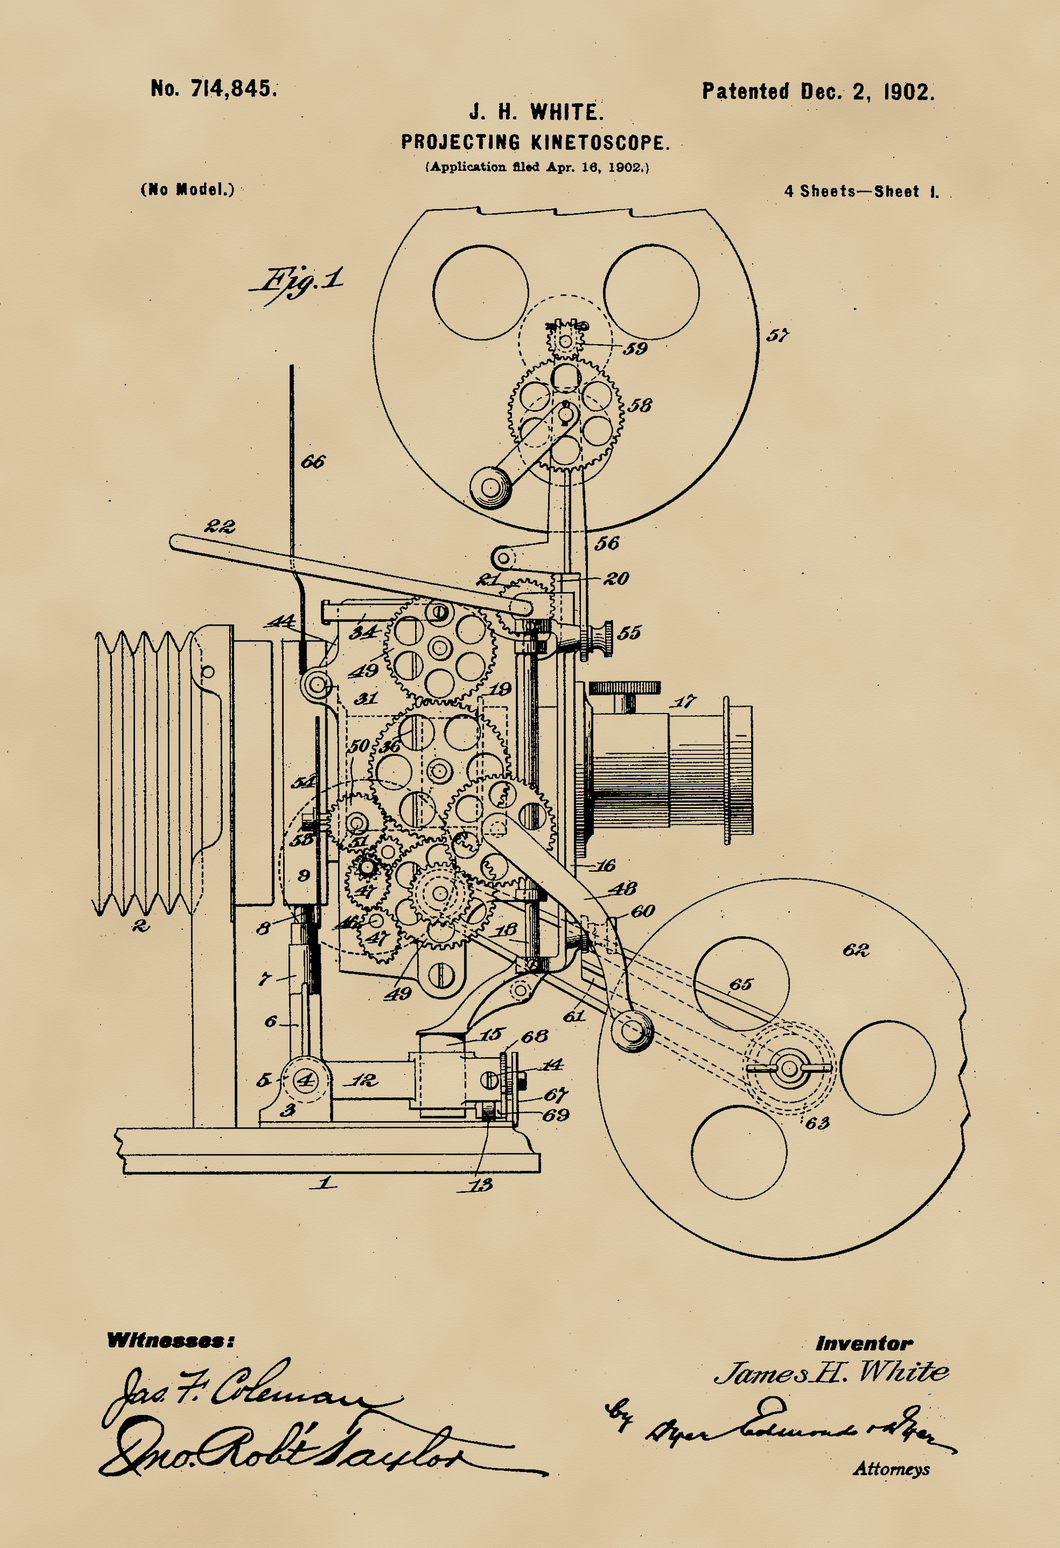 Vetítőgép, kinetoszkóp, vintage, industrial stílusú poszter, 1902-es amerikai szabadalmi rajza alapján